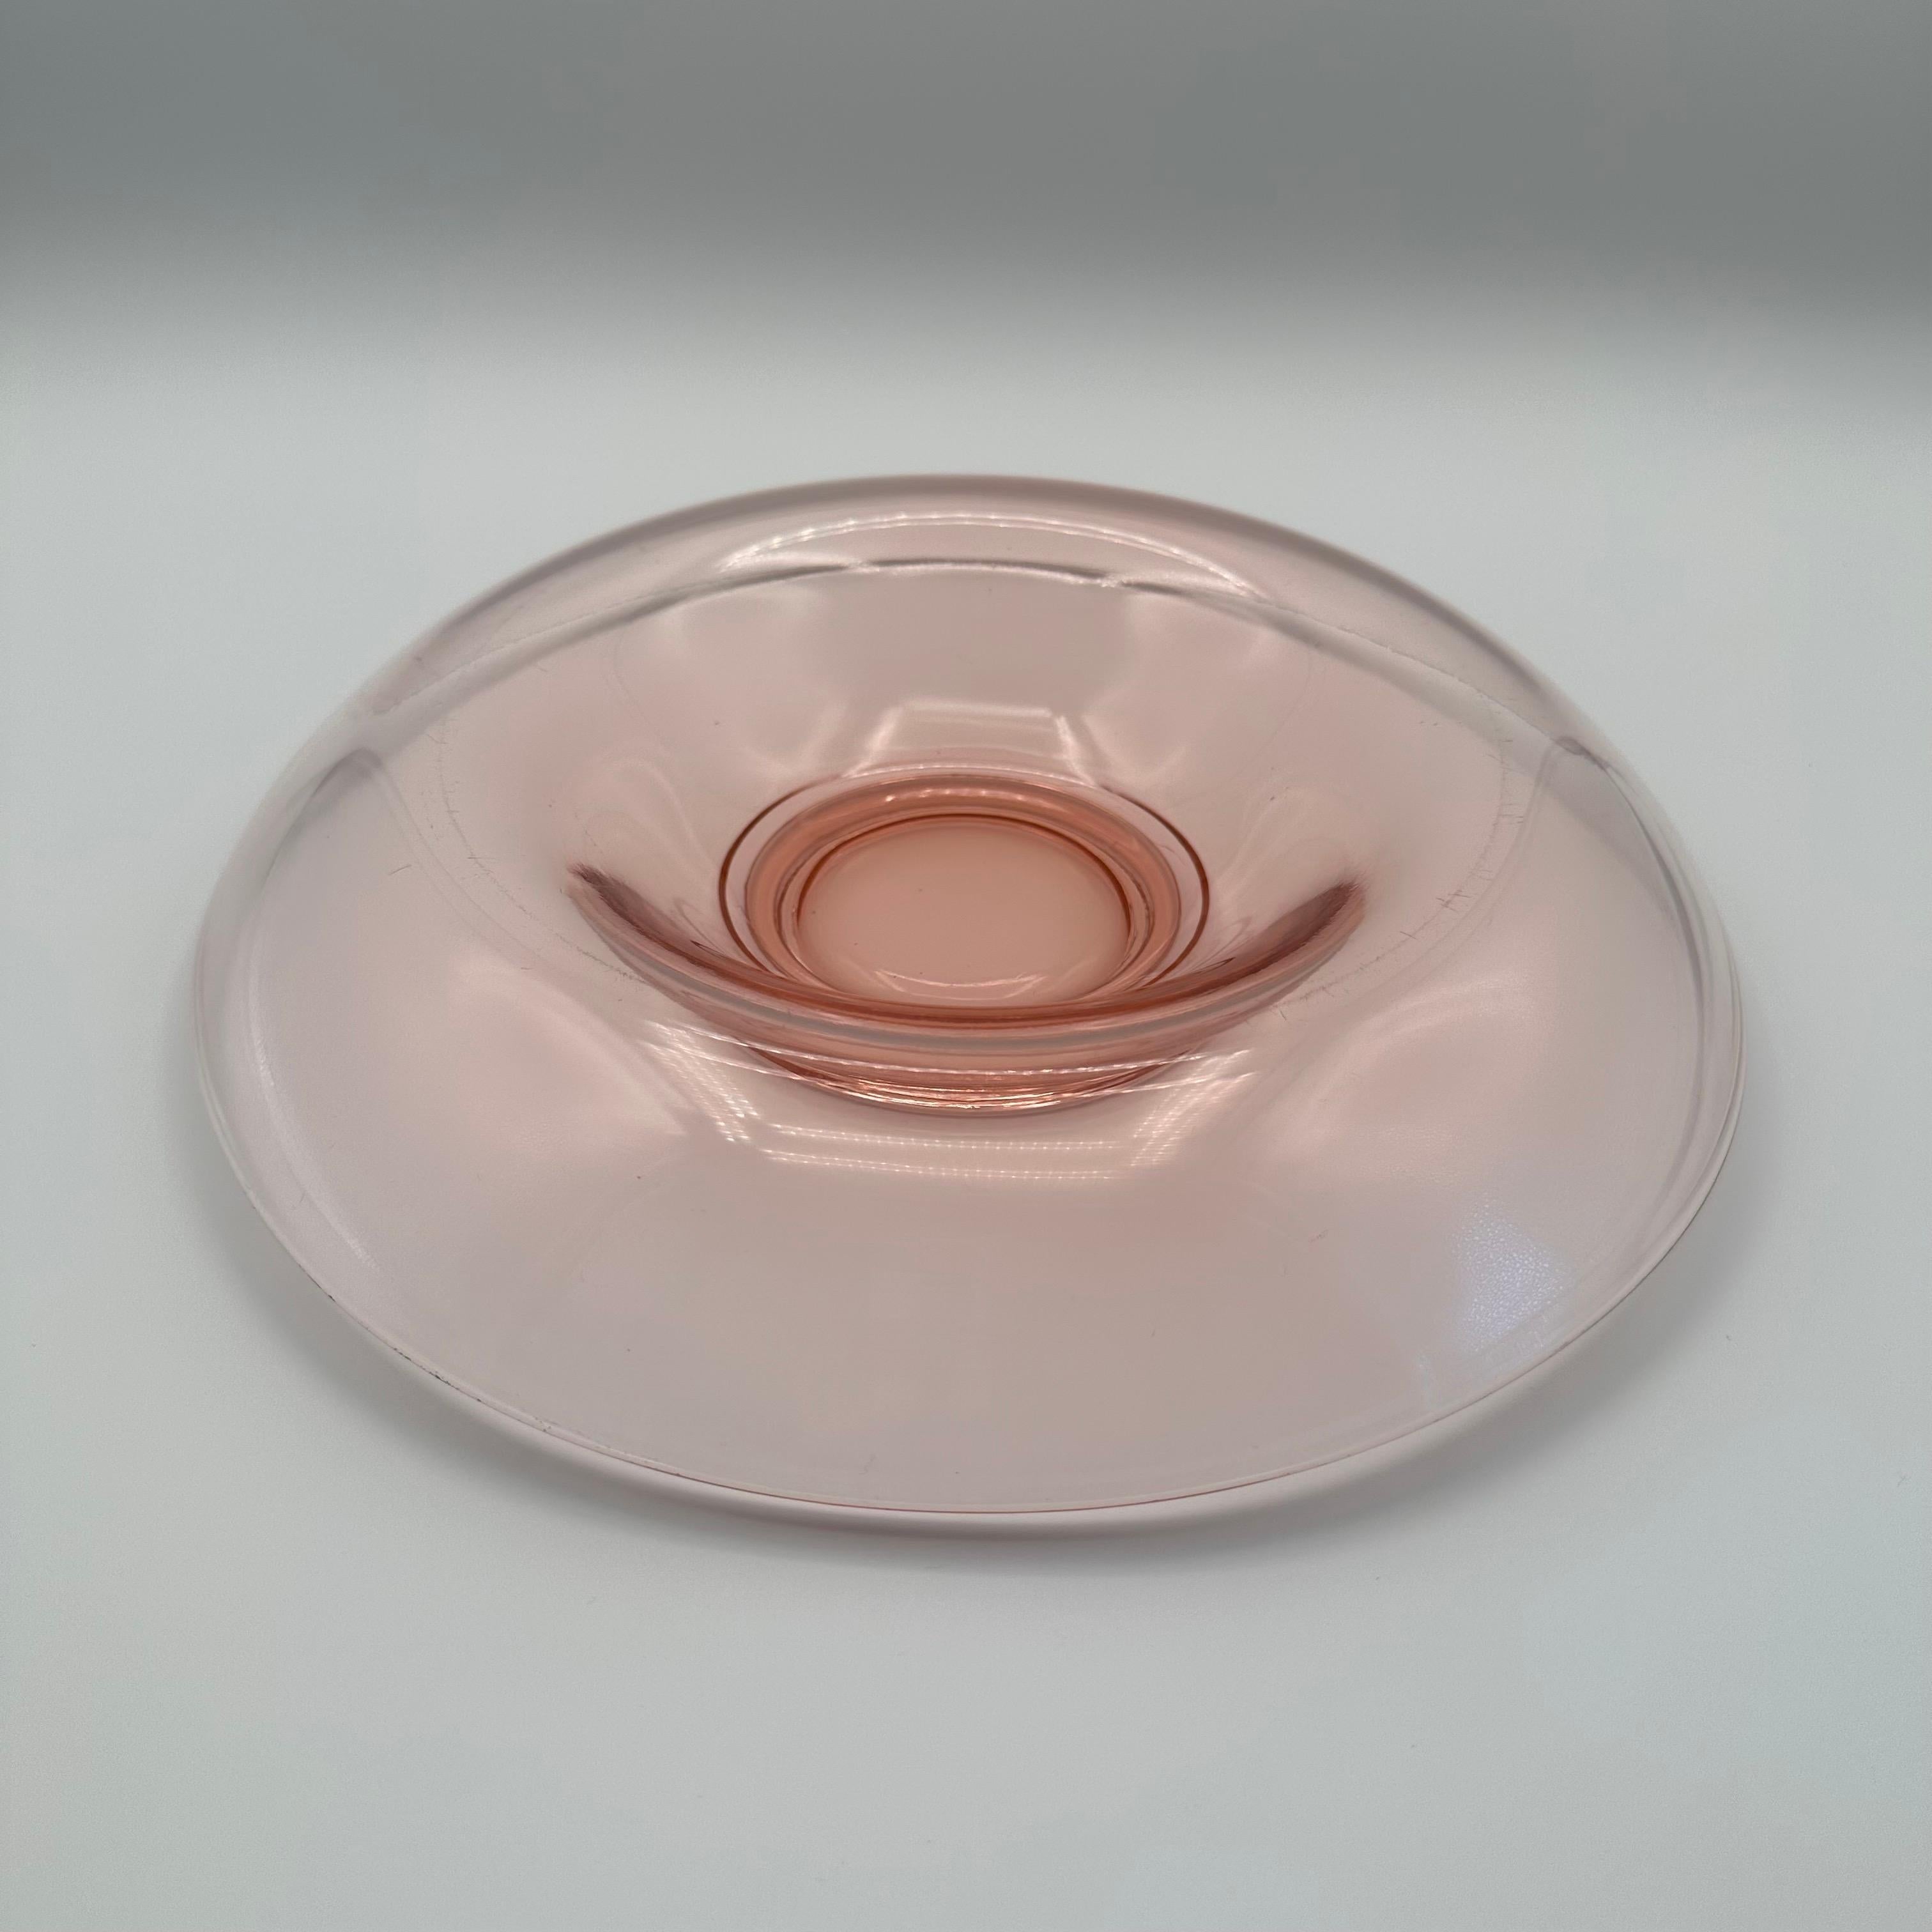 pink glass bowl vintage